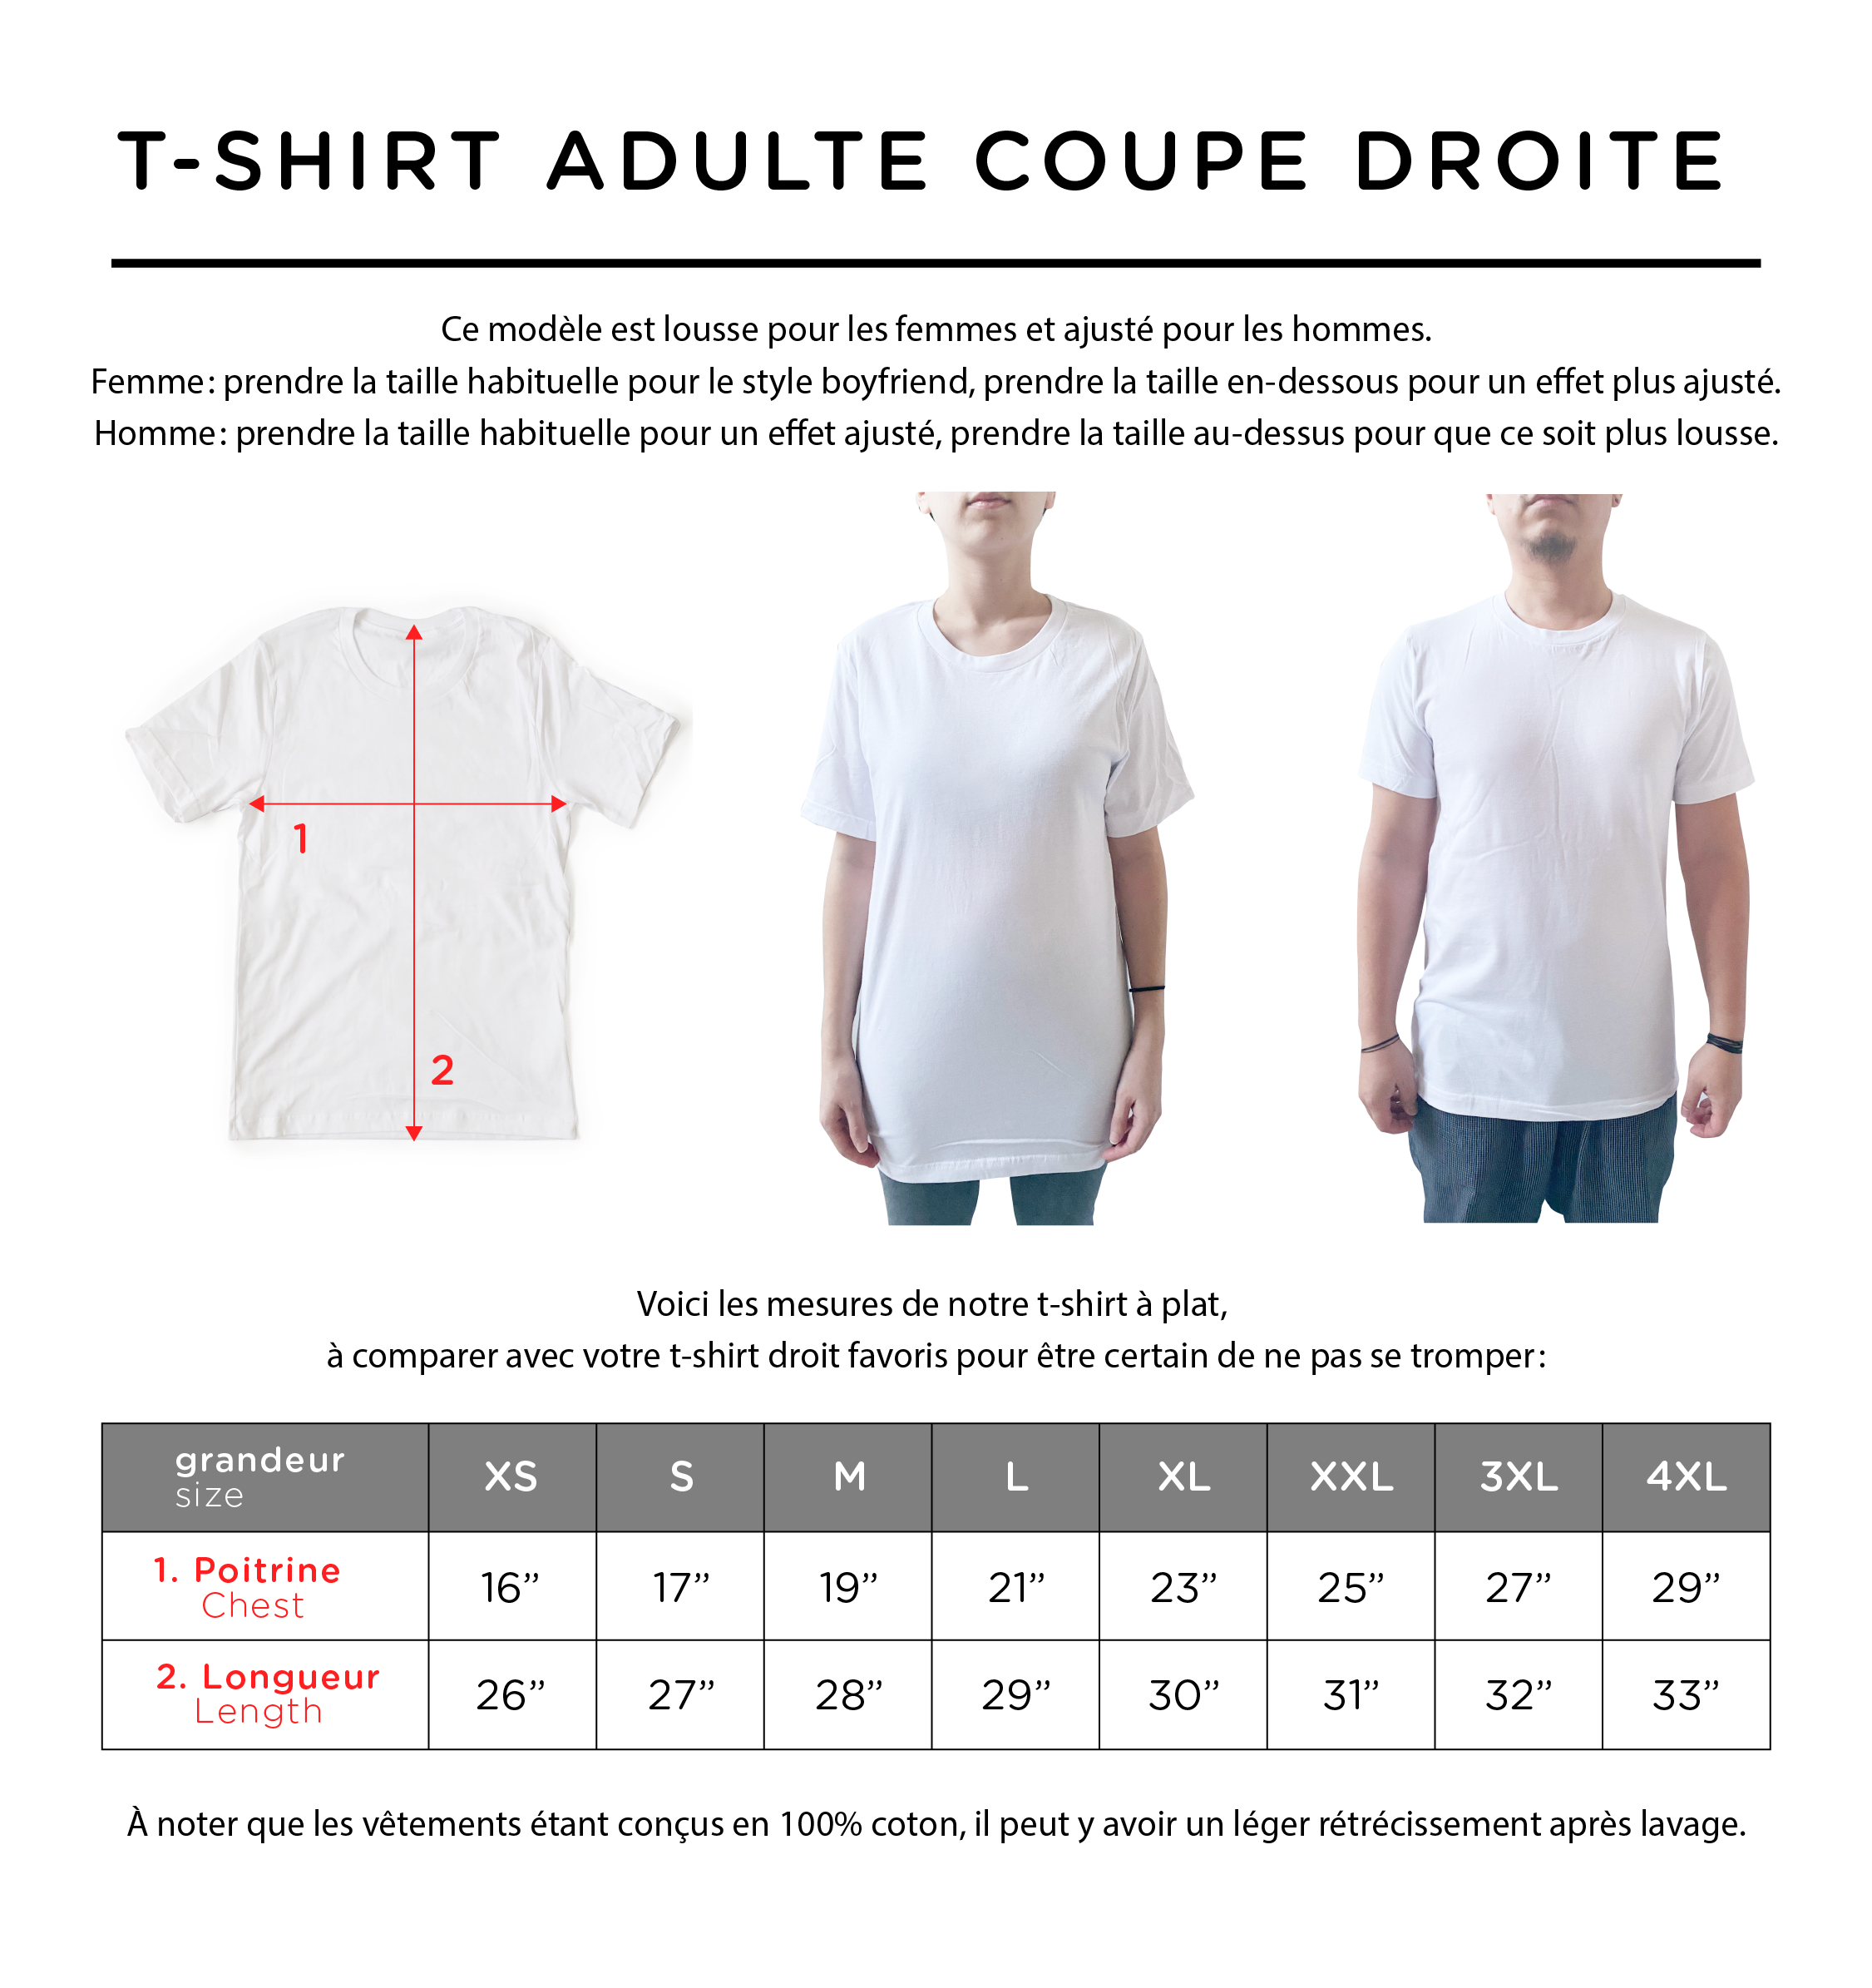 Design PETITE ICÔNE non-personnalisé (options pour la famille) - t-shirt Adulte